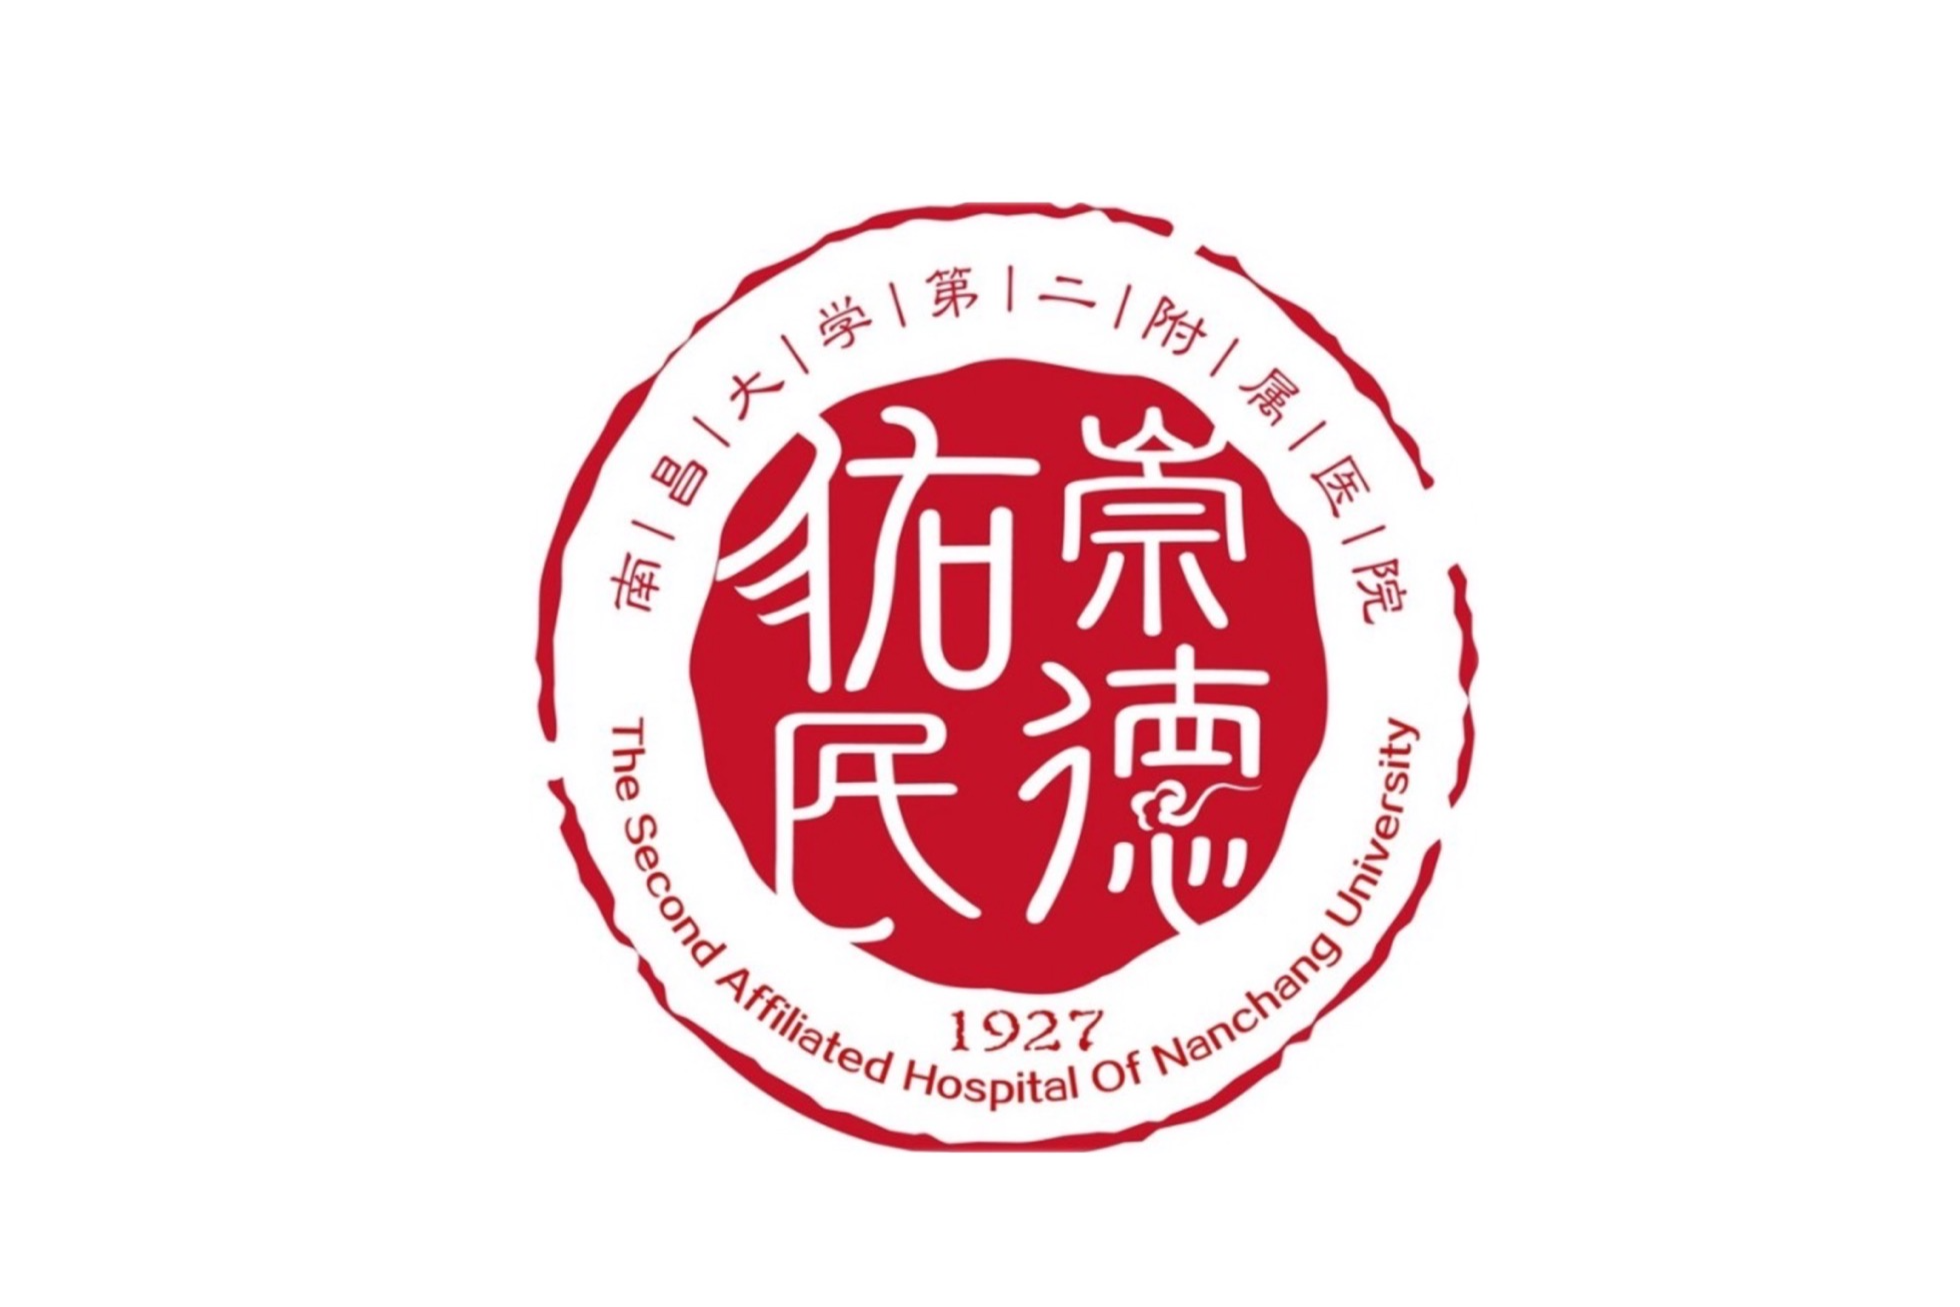 第九届中国健康品牌大会将于 11 月 3 日至 5 日在雄安召开